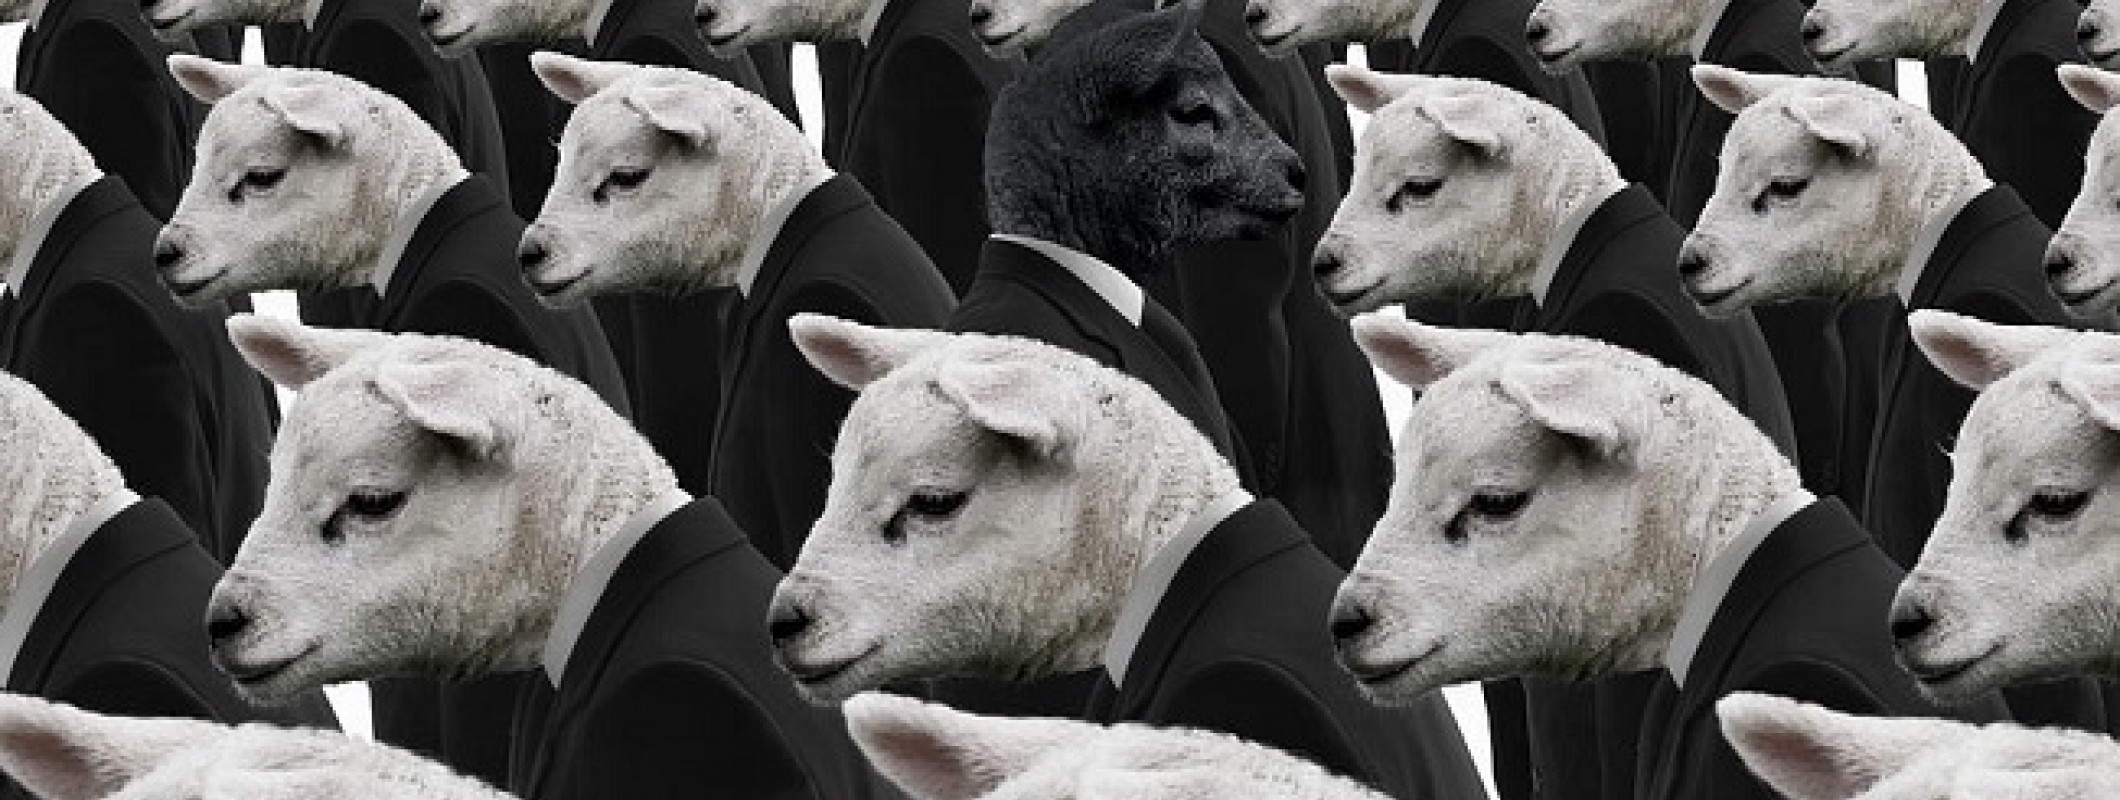 Толпа овец. Стадо людей. Общество стадо. Обитатель общества